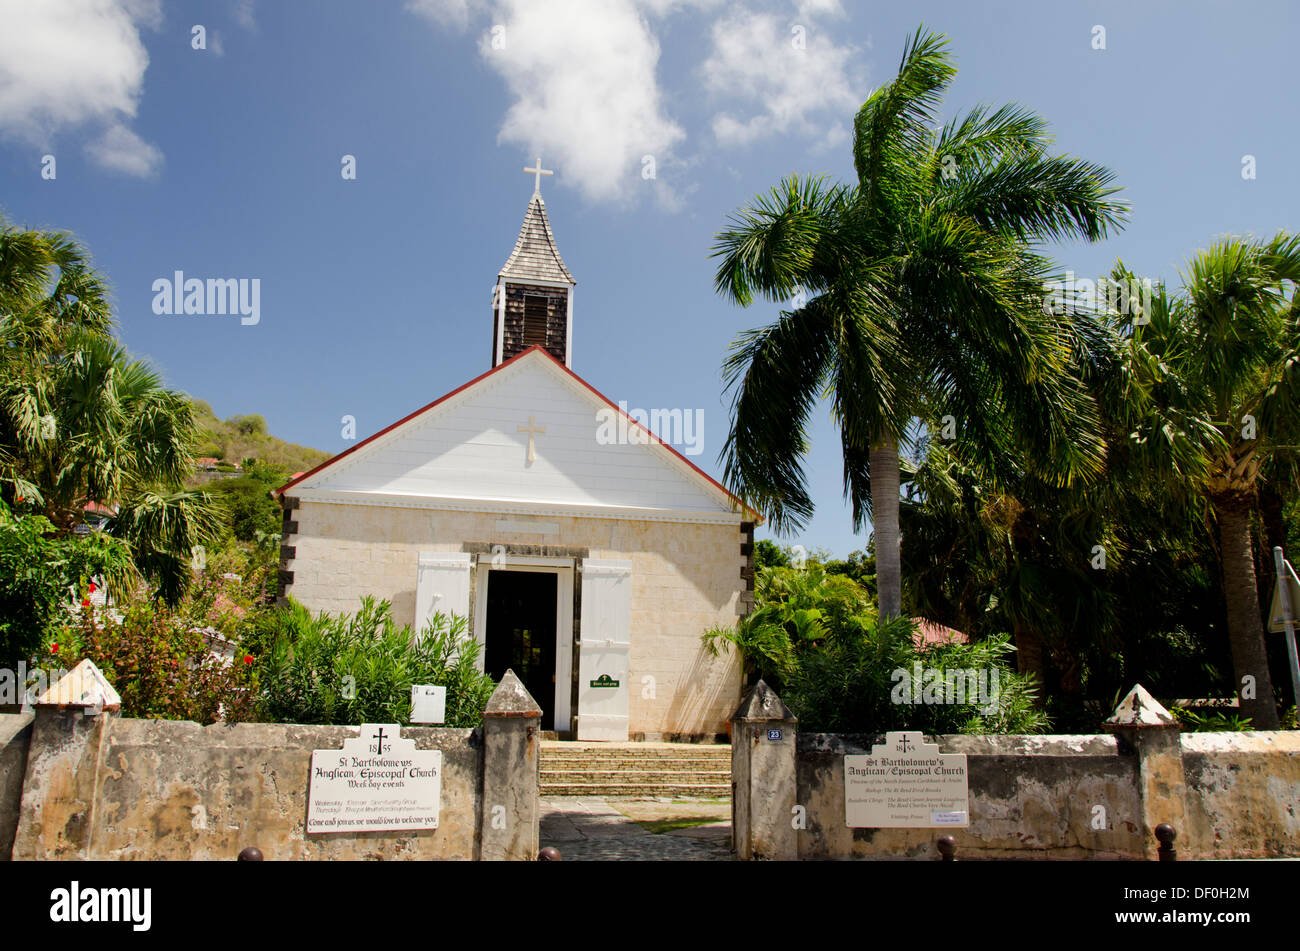 Le Indie occidentali francesi, isola caraibica di Saint Barthelemy (St. Bart's), la città capitale di Gustavia. San Bartolomeo la chiesa Foto Stock